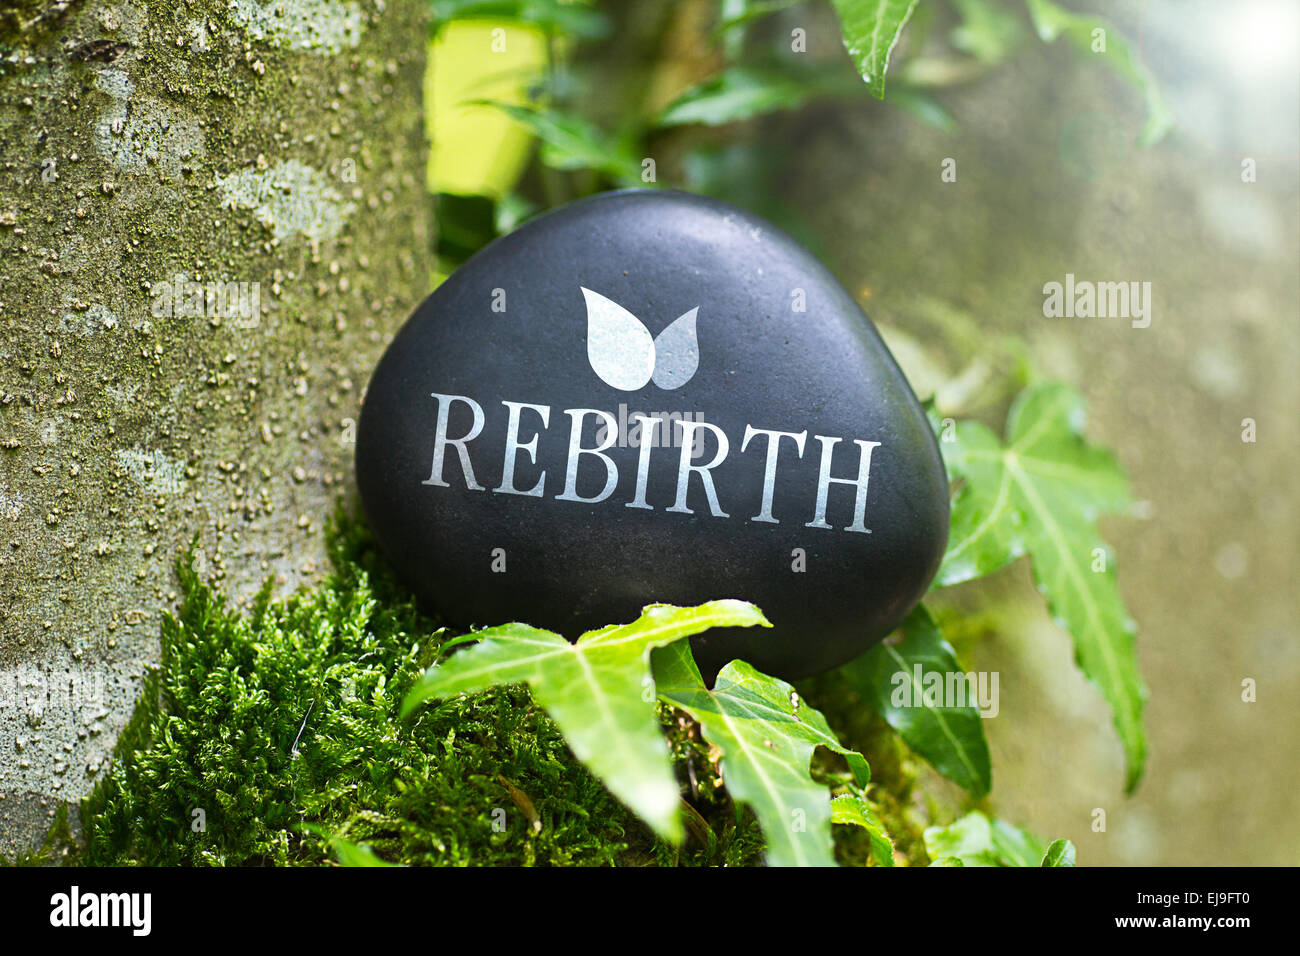 Das Wort "Rebirth" auf einem Stein in der Natur Stockfoto